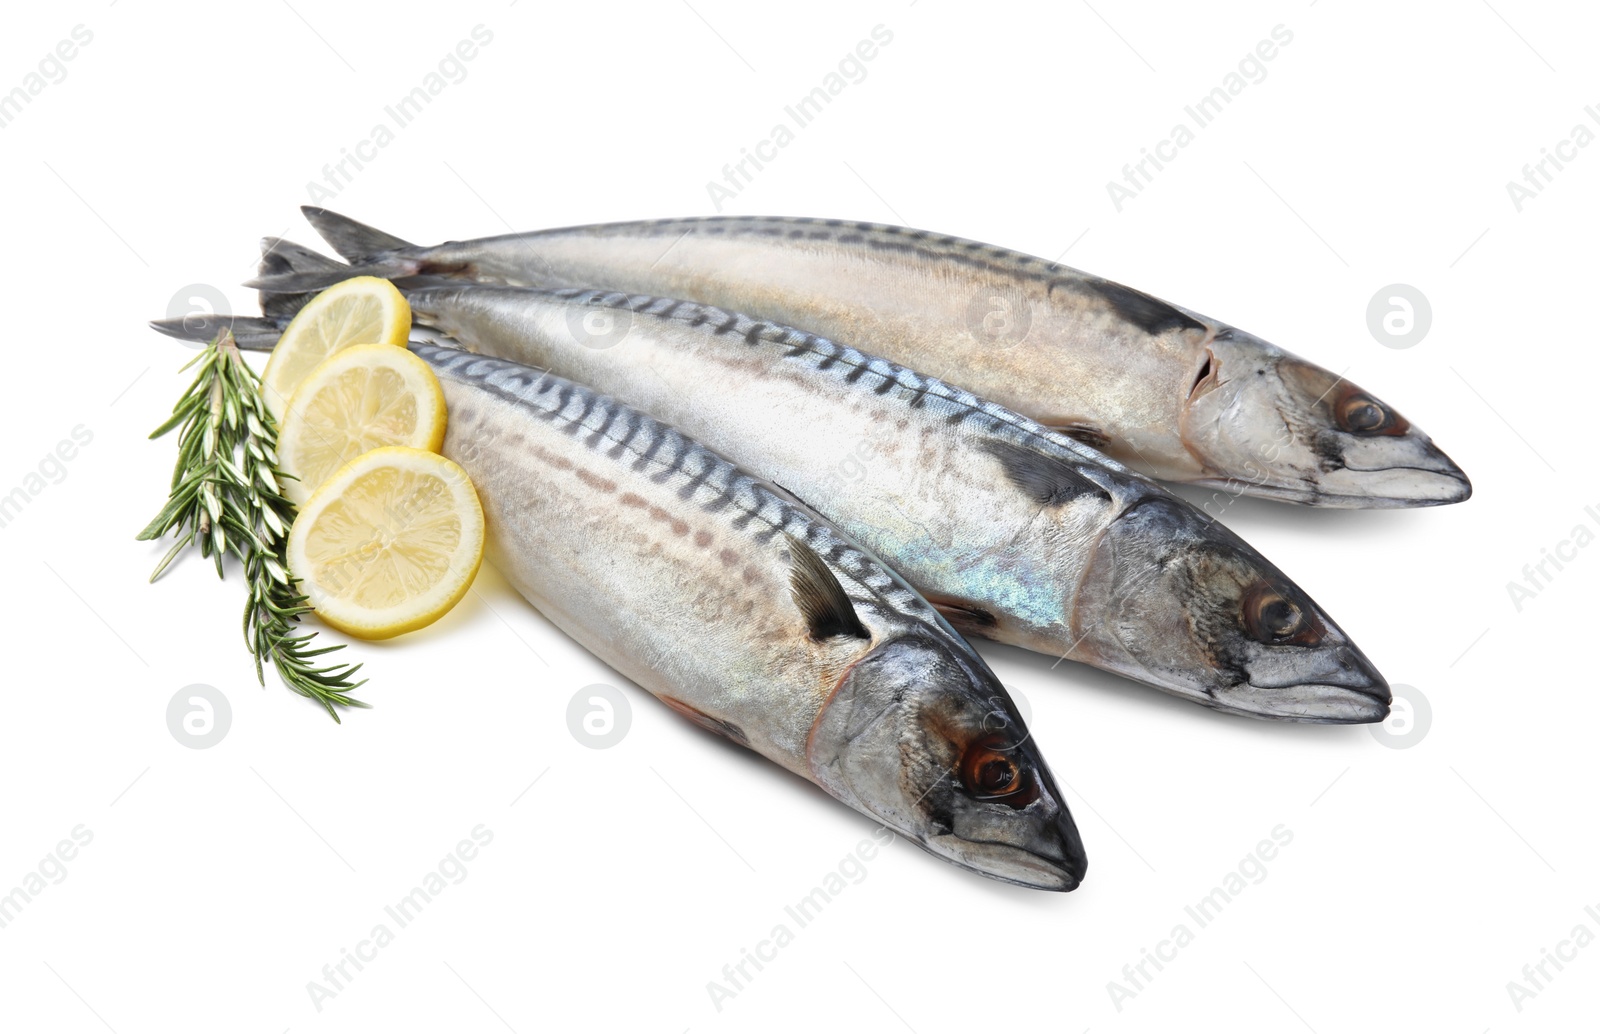 Photo of Raw mackerels, lemons and rosemary isolated on white